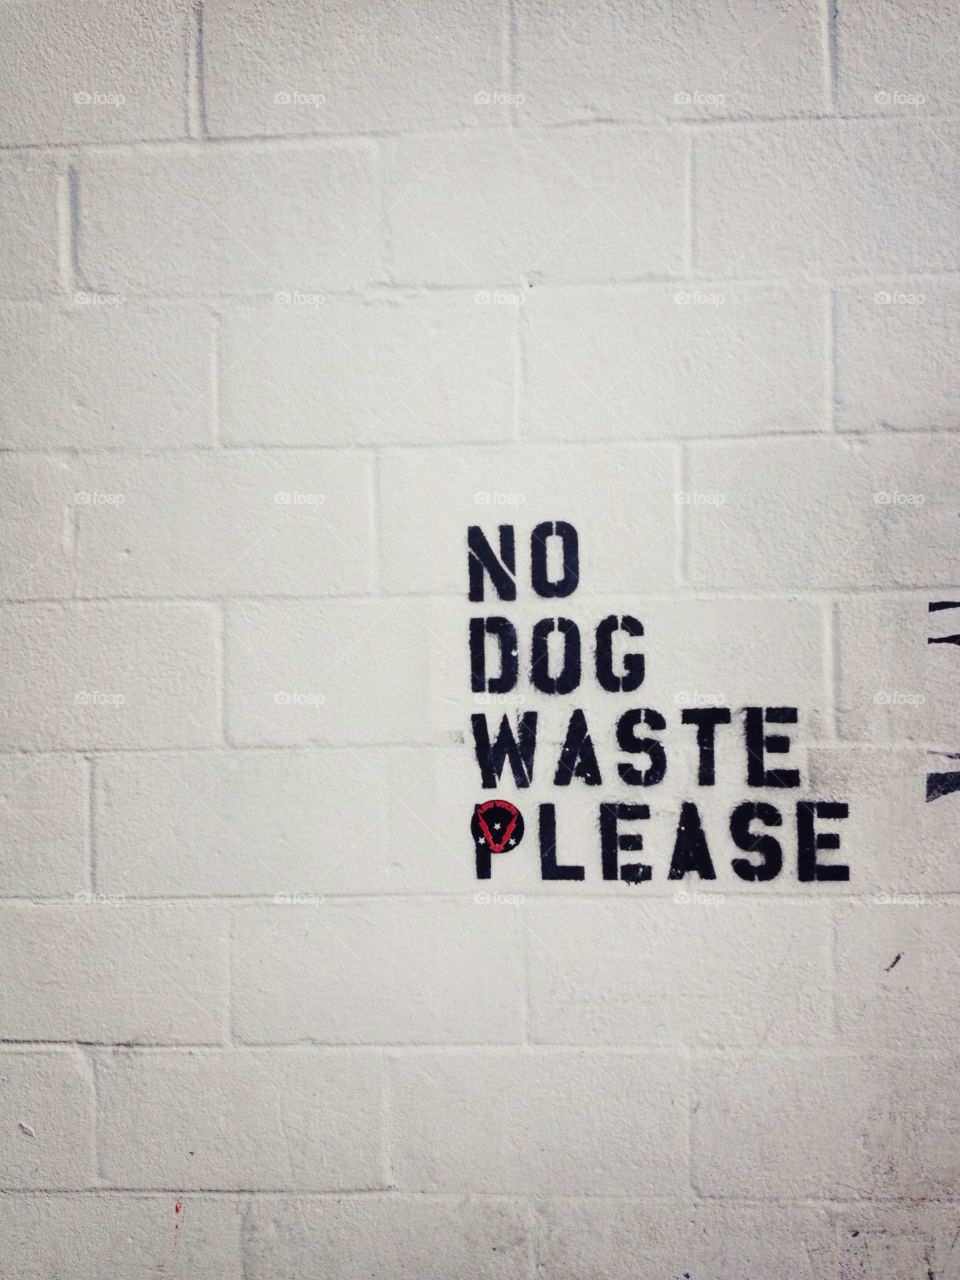 graffiti dog brooklyn nyc by kellieannliu